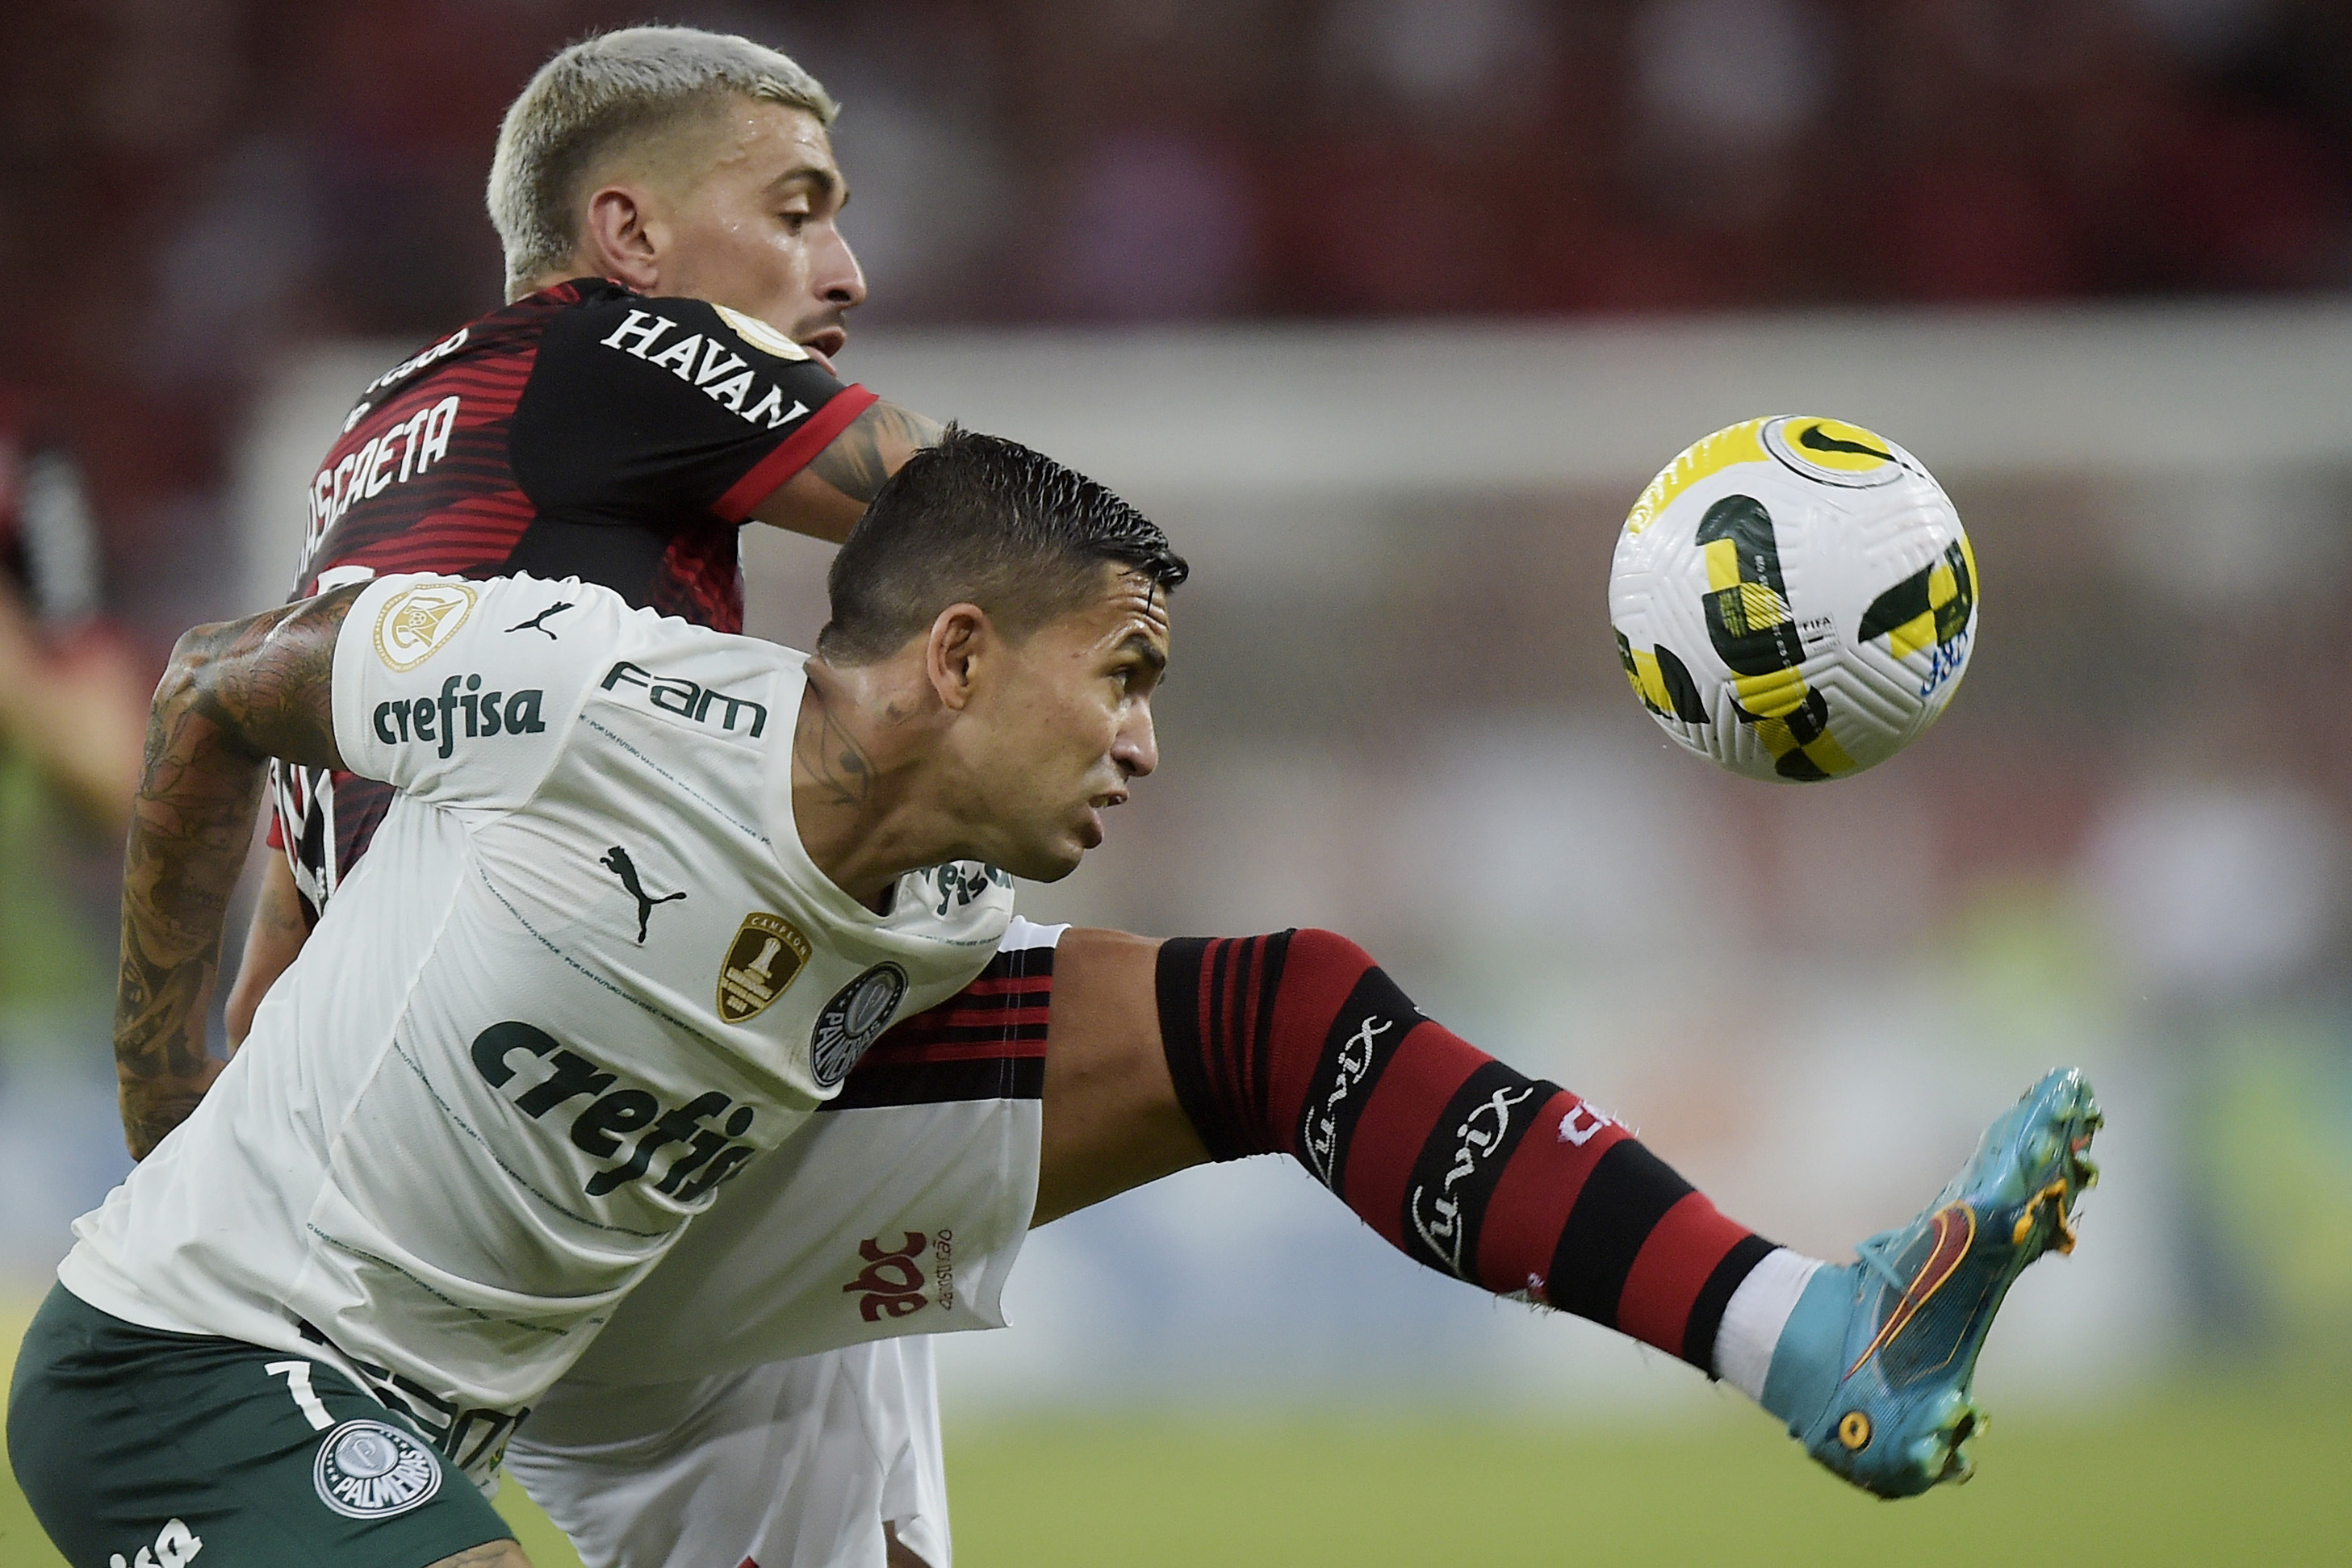 Futebol: 16 clubes brasileiros movimentaram R$ 6,8 bilhões em 2019